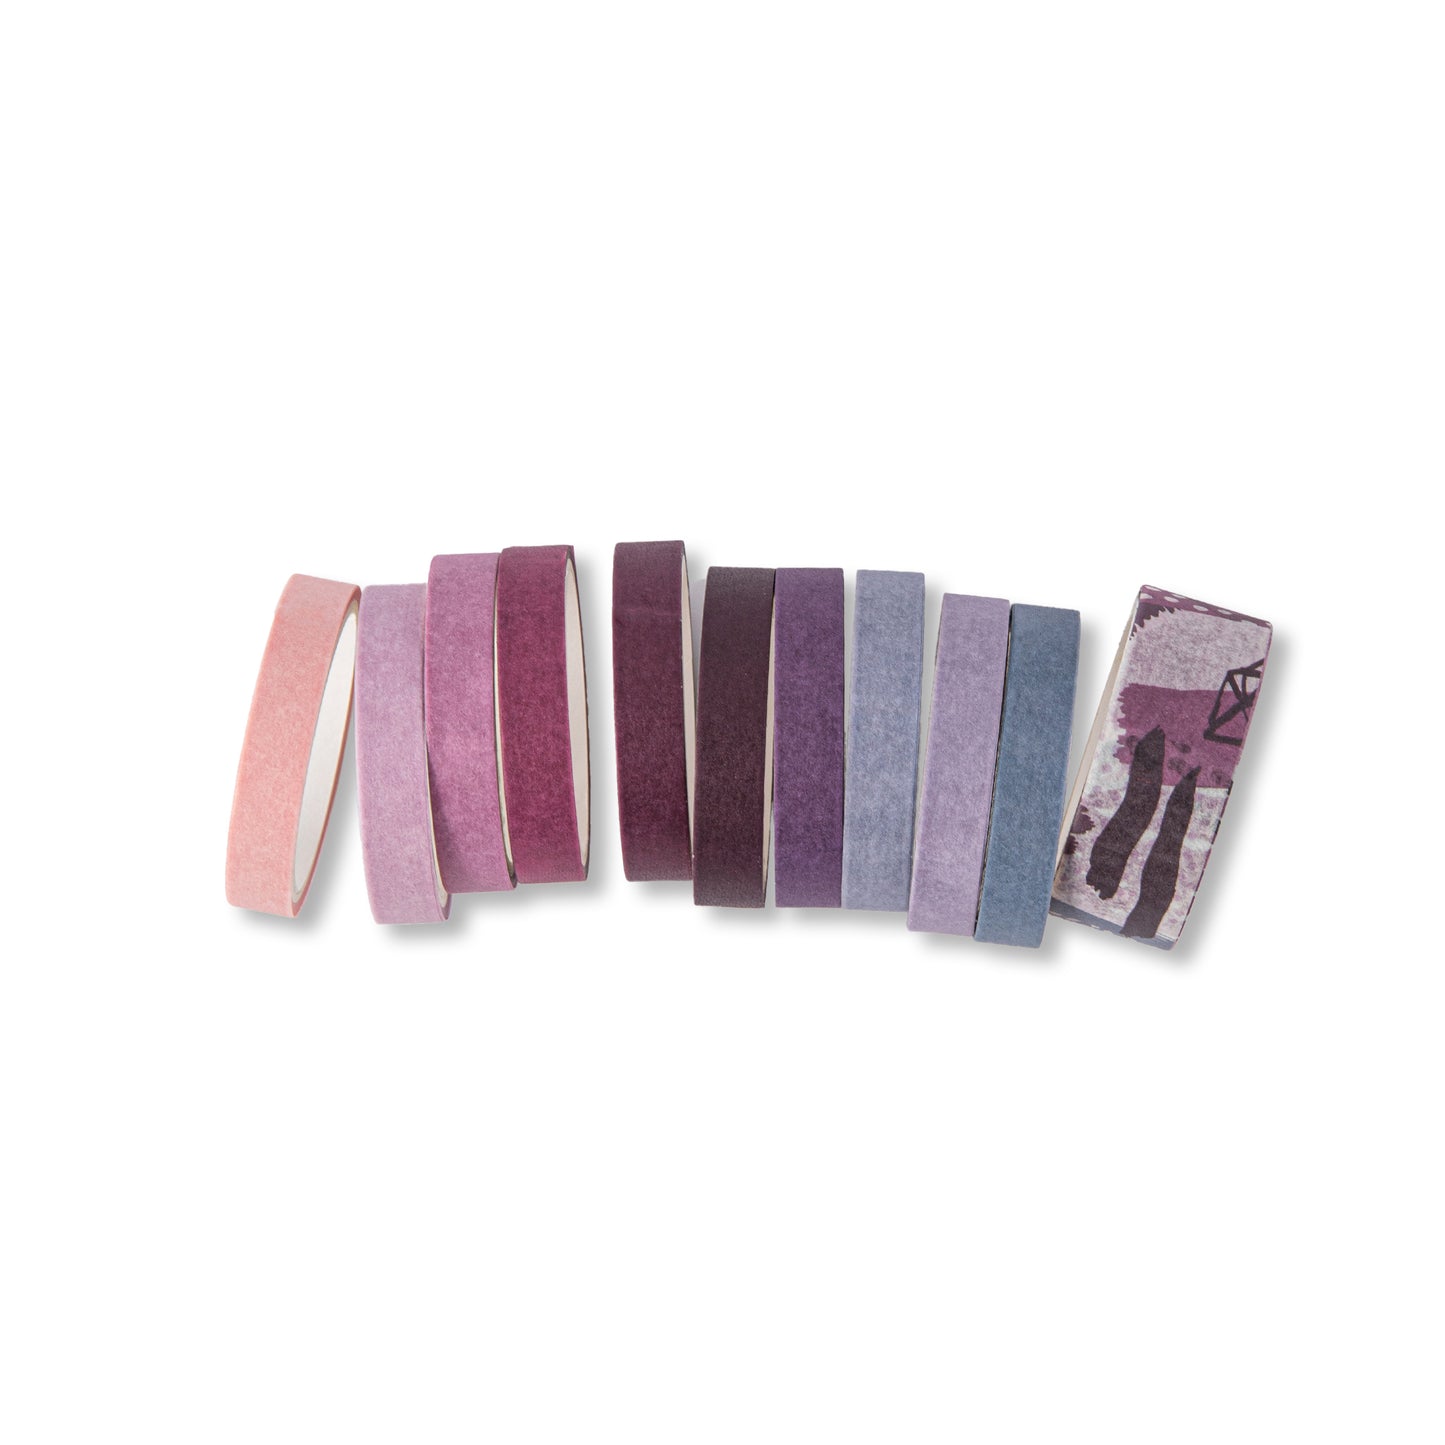 Basic Solid Color Washi Tape - Lavender - Set of 11